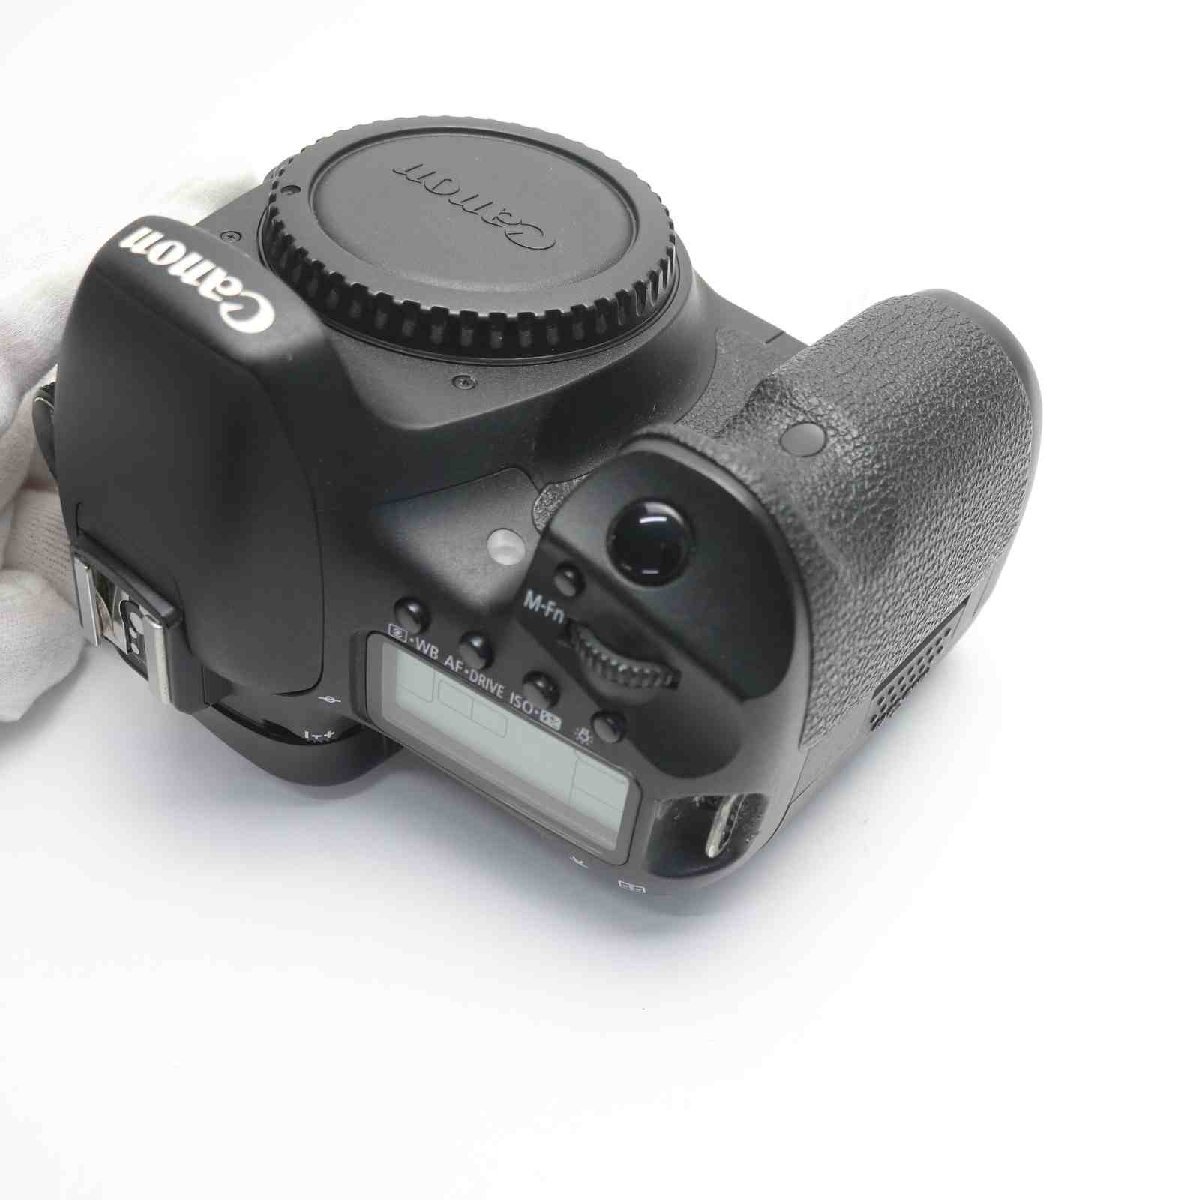 美品 EOS 7D ブラック ボディ 即日発送 デジ1 Canon デジタルカメラ 本体 あすつく 土日祝発送OK_画像3